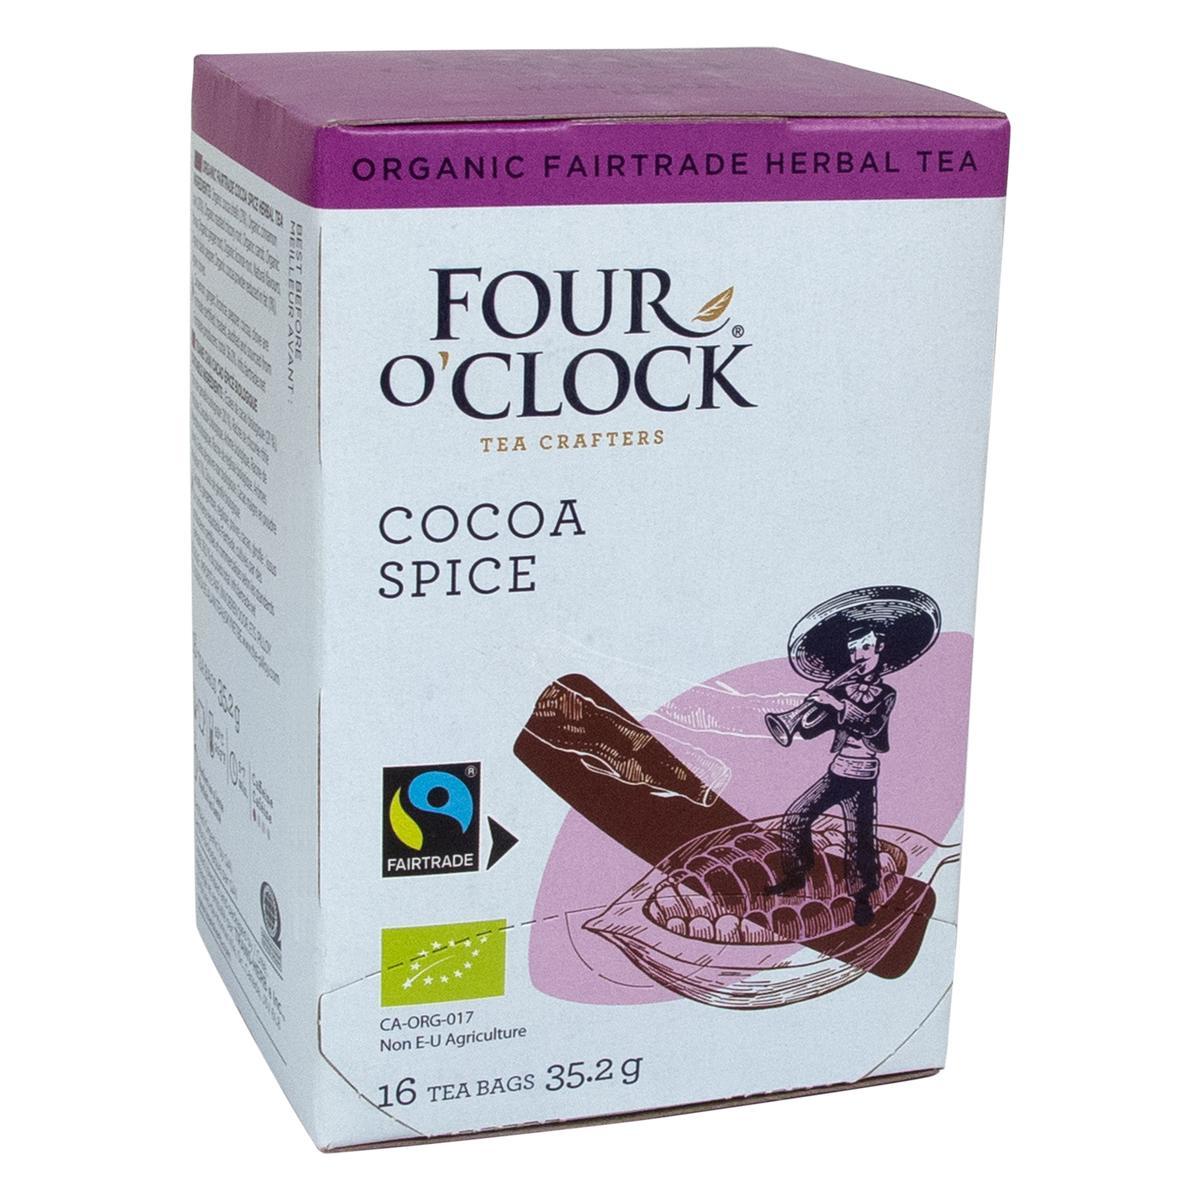 Four O’Clock's Four O'Clock COCOA SPICE '